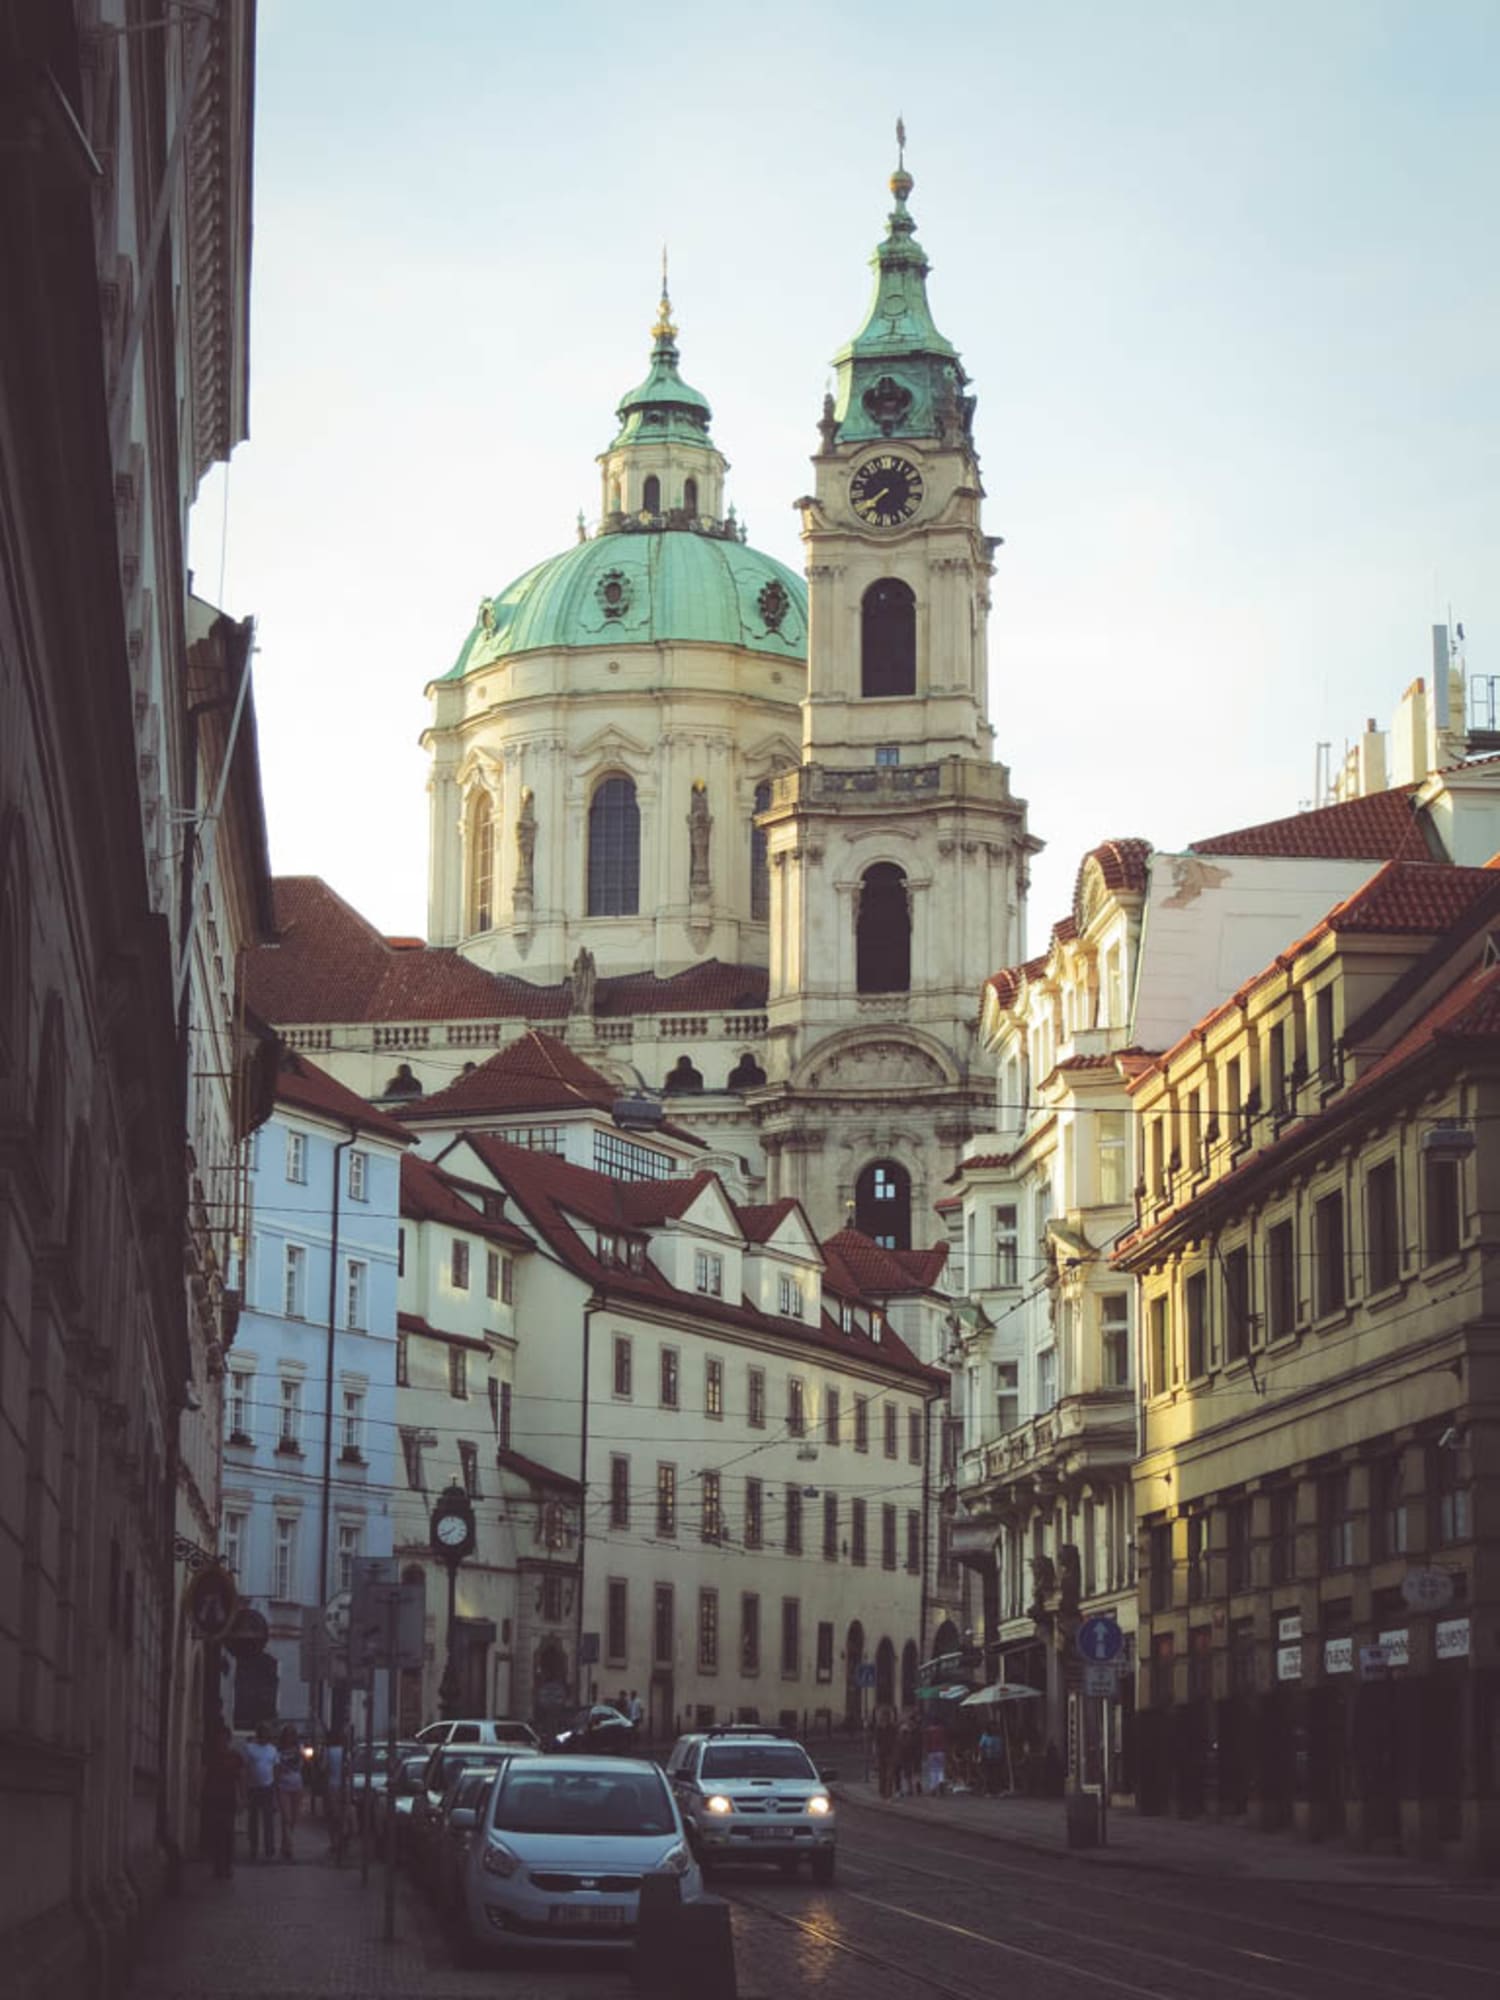 Kopfsteingepflasterte Straßen, niedrige Häuser und prunkvolle Kirchen erwarten dich auf der sogenannten Kleinseite in Prag. Hier im Hintergrund die barocke St. Nikolaikirche.